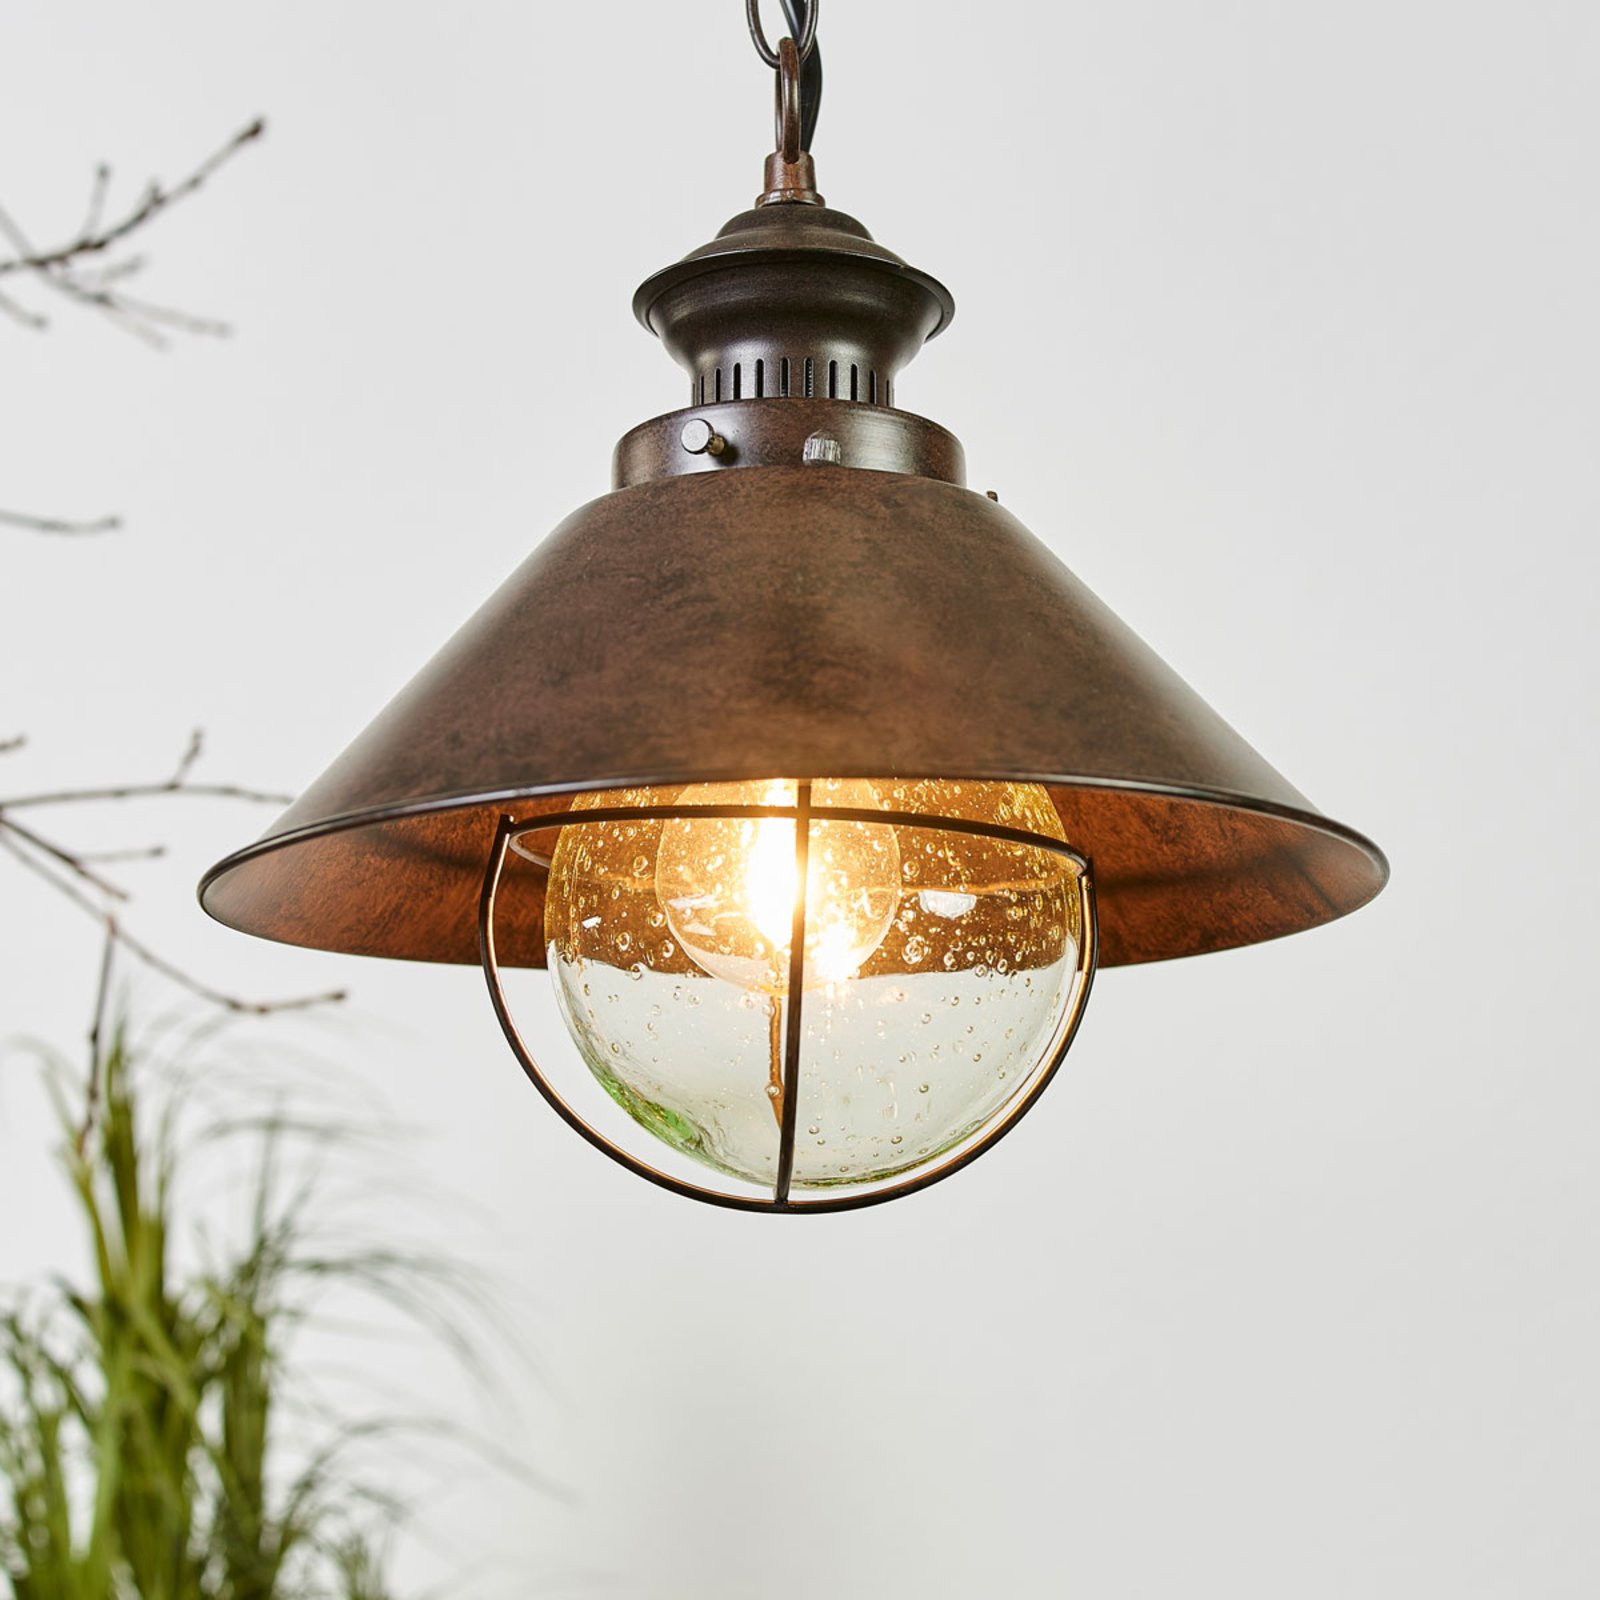 Lámpara colgante Náutica en diseño antiguo, 26 cm